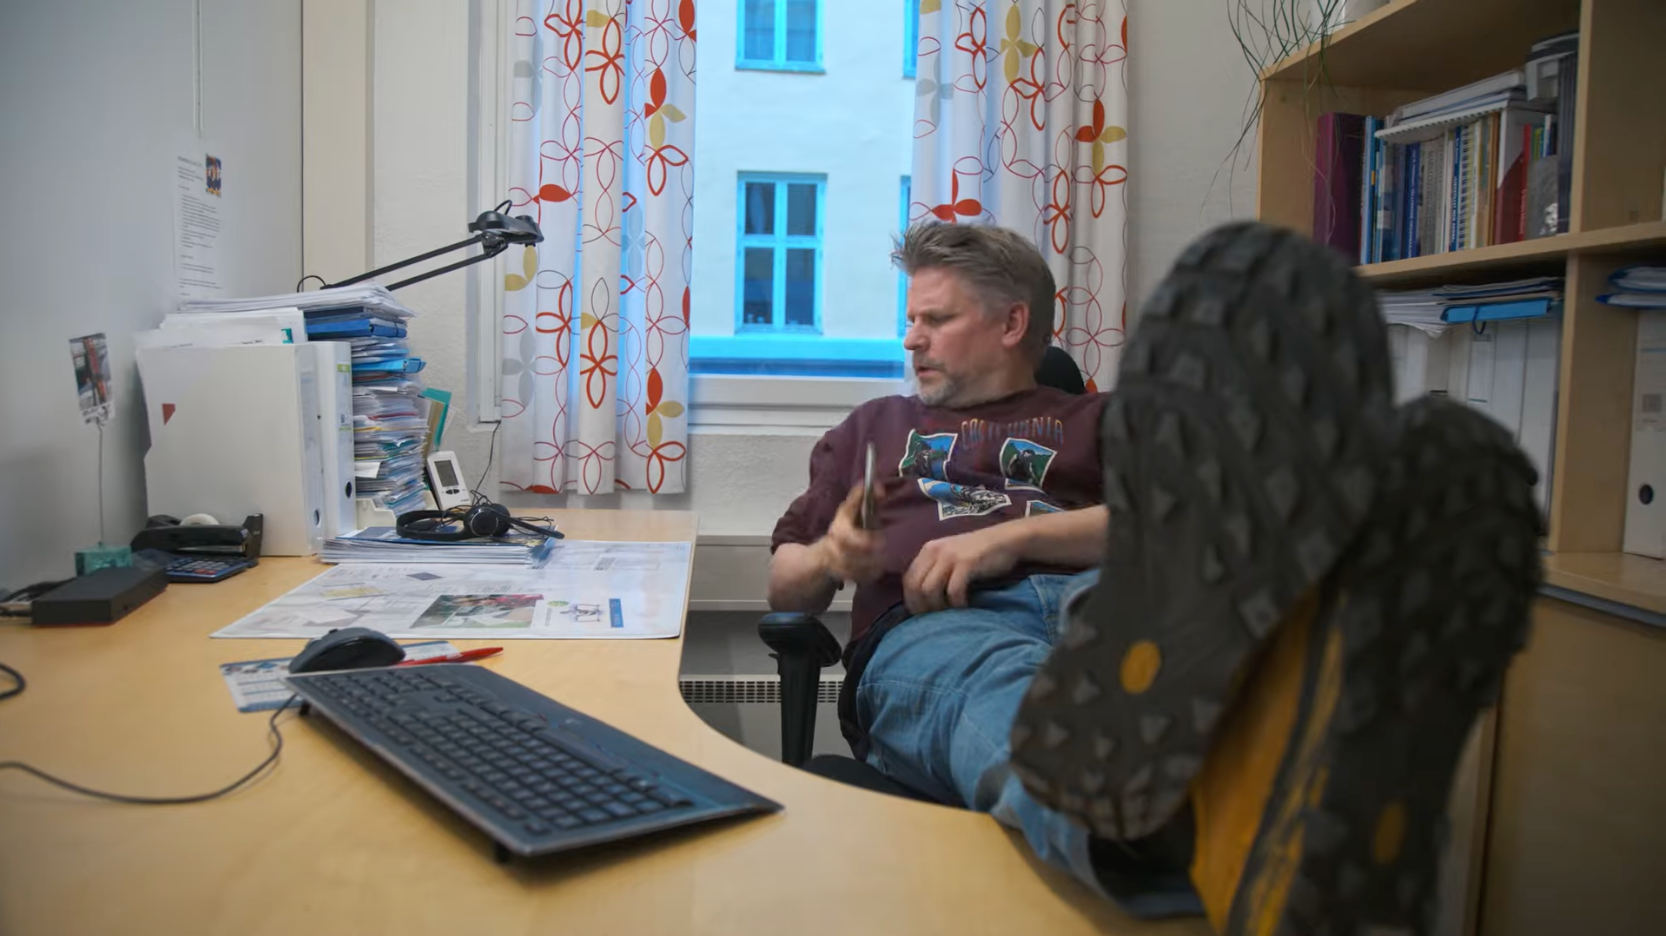 På et kontor sitter en mann med beina på bordet og ser ned på papirer.